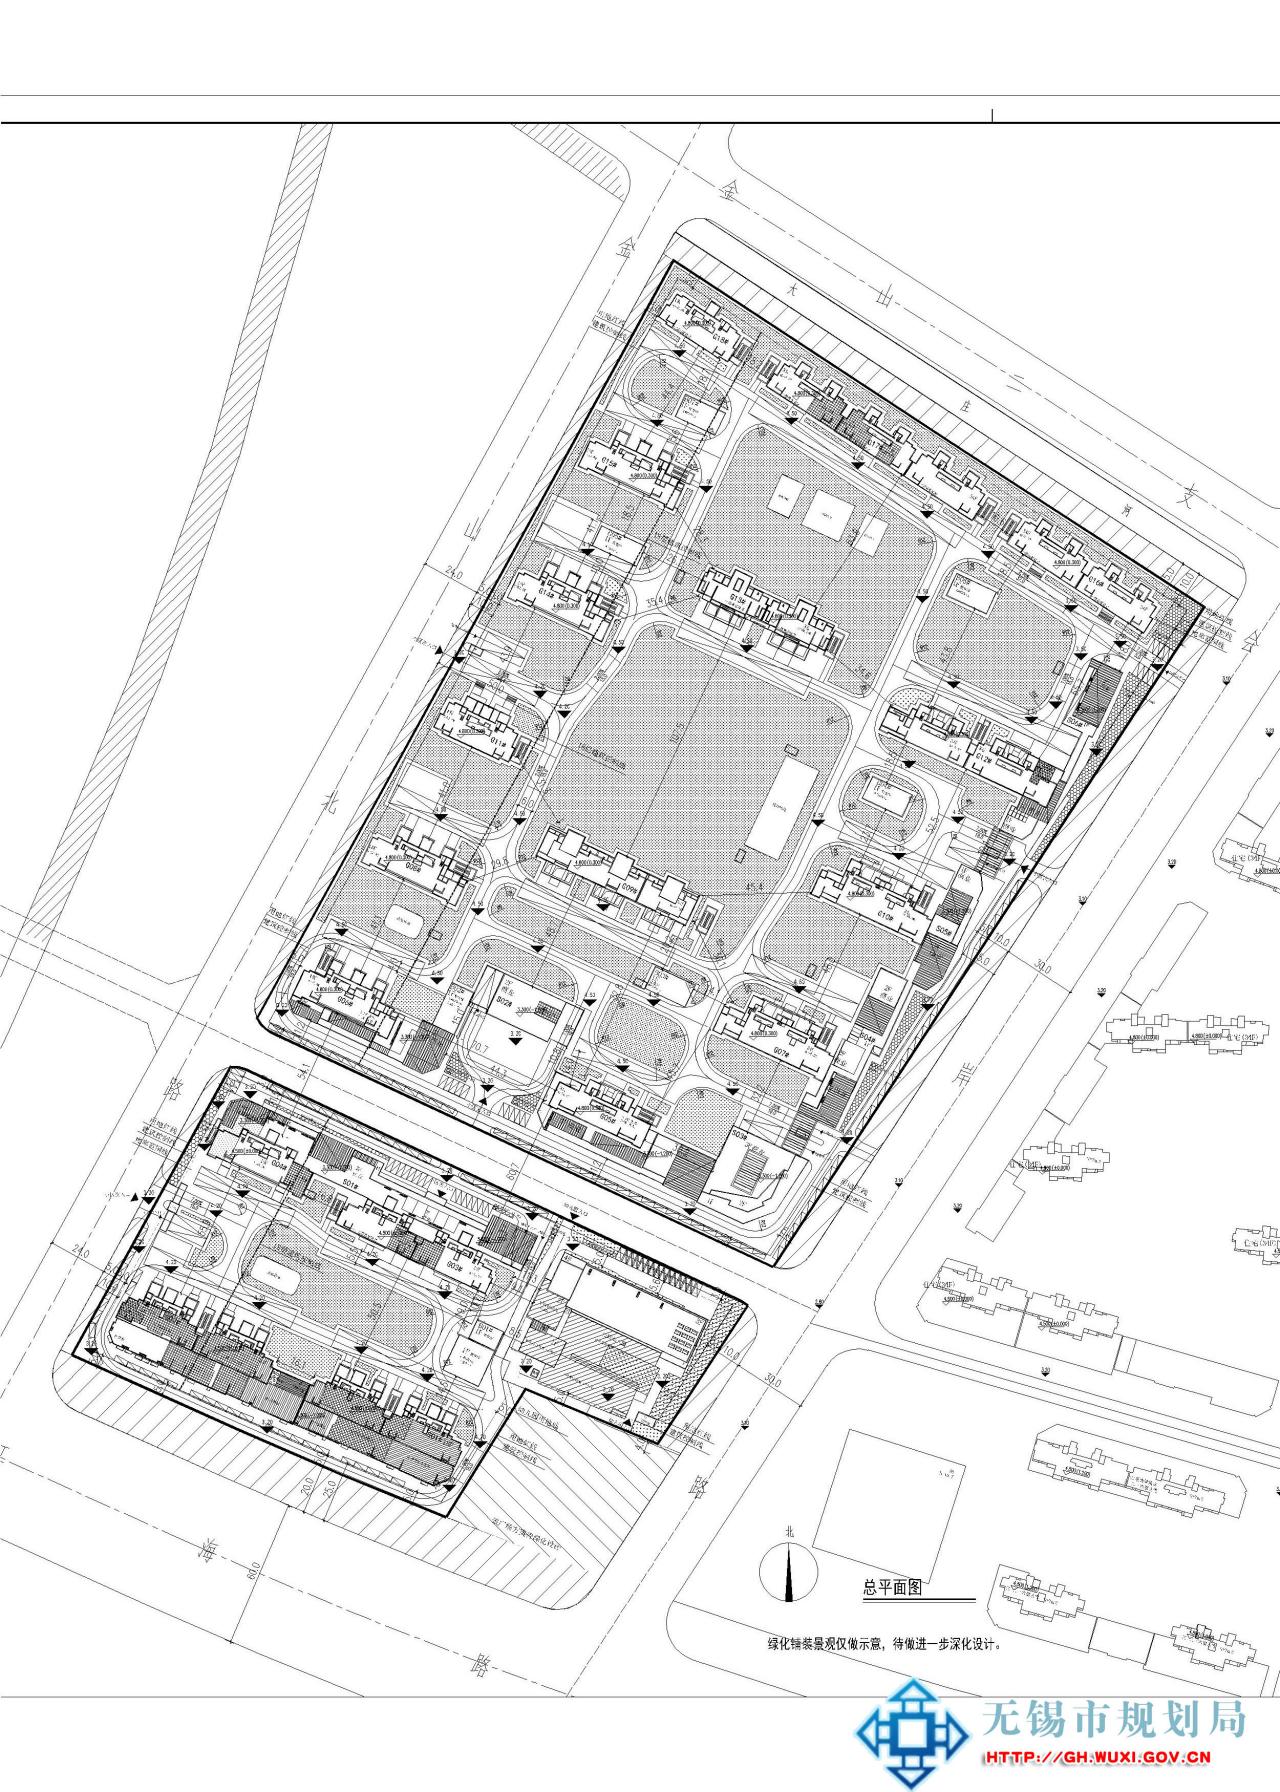 XDG-2016-35号地块开发建设项目规划设计方案批前公示